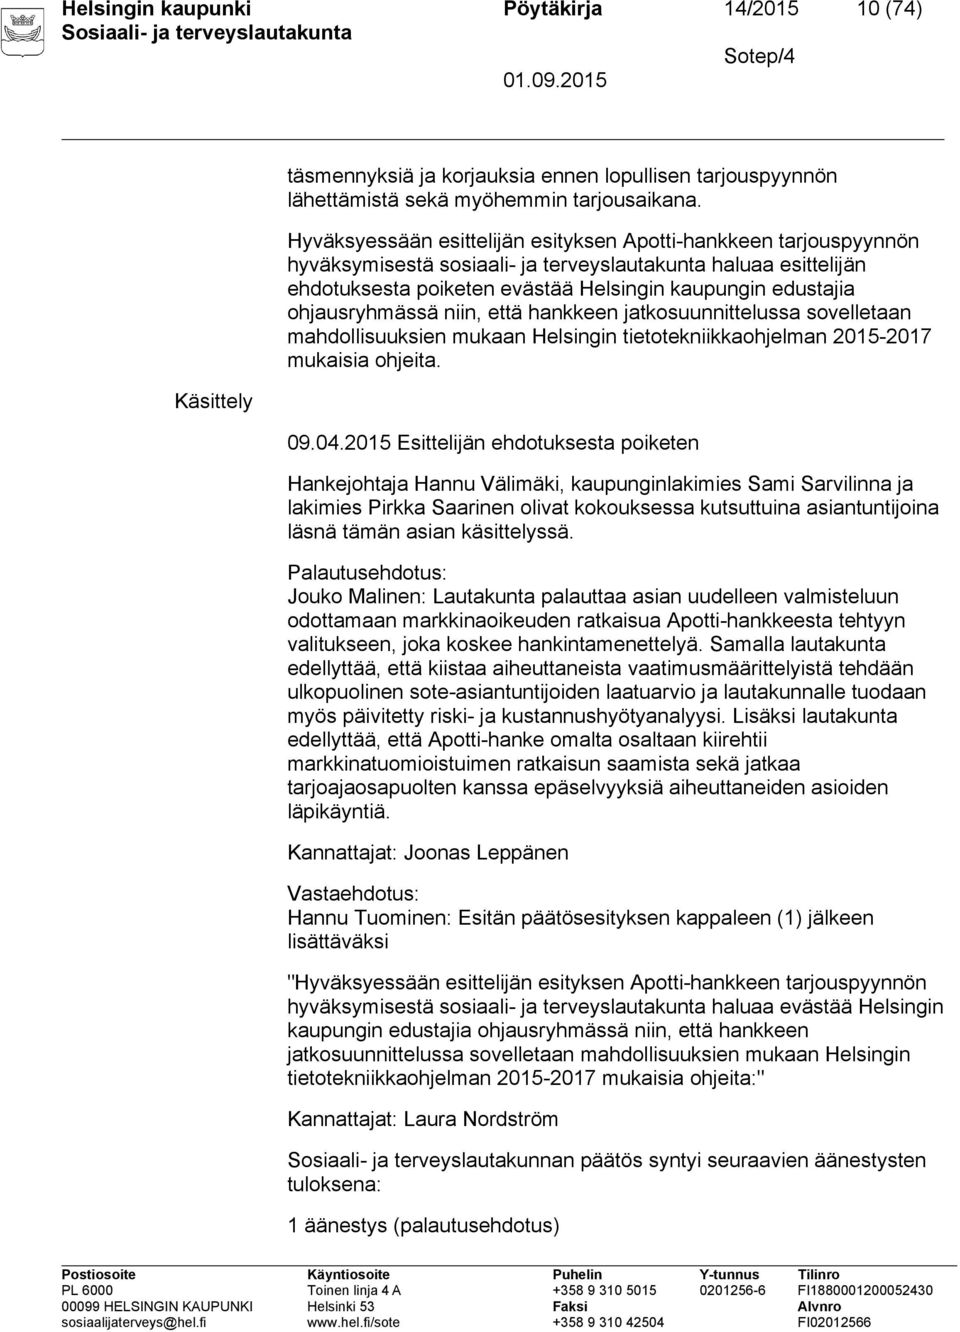 ohjausryhmässä niin, että hankkeen jatkosuunnittelussa sovelletaan mahdollisuuksien mukaan Helsingin tietotekniikkaohjelman 2015-2017 mukaisia ohjeita. 09.04.